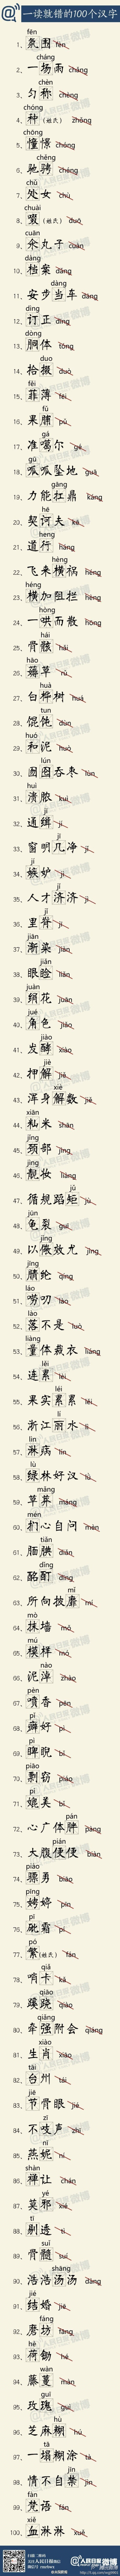 【中国汉字小积累】一读就错的100个字，收了。别说，还真有好些没有读对~~~曦